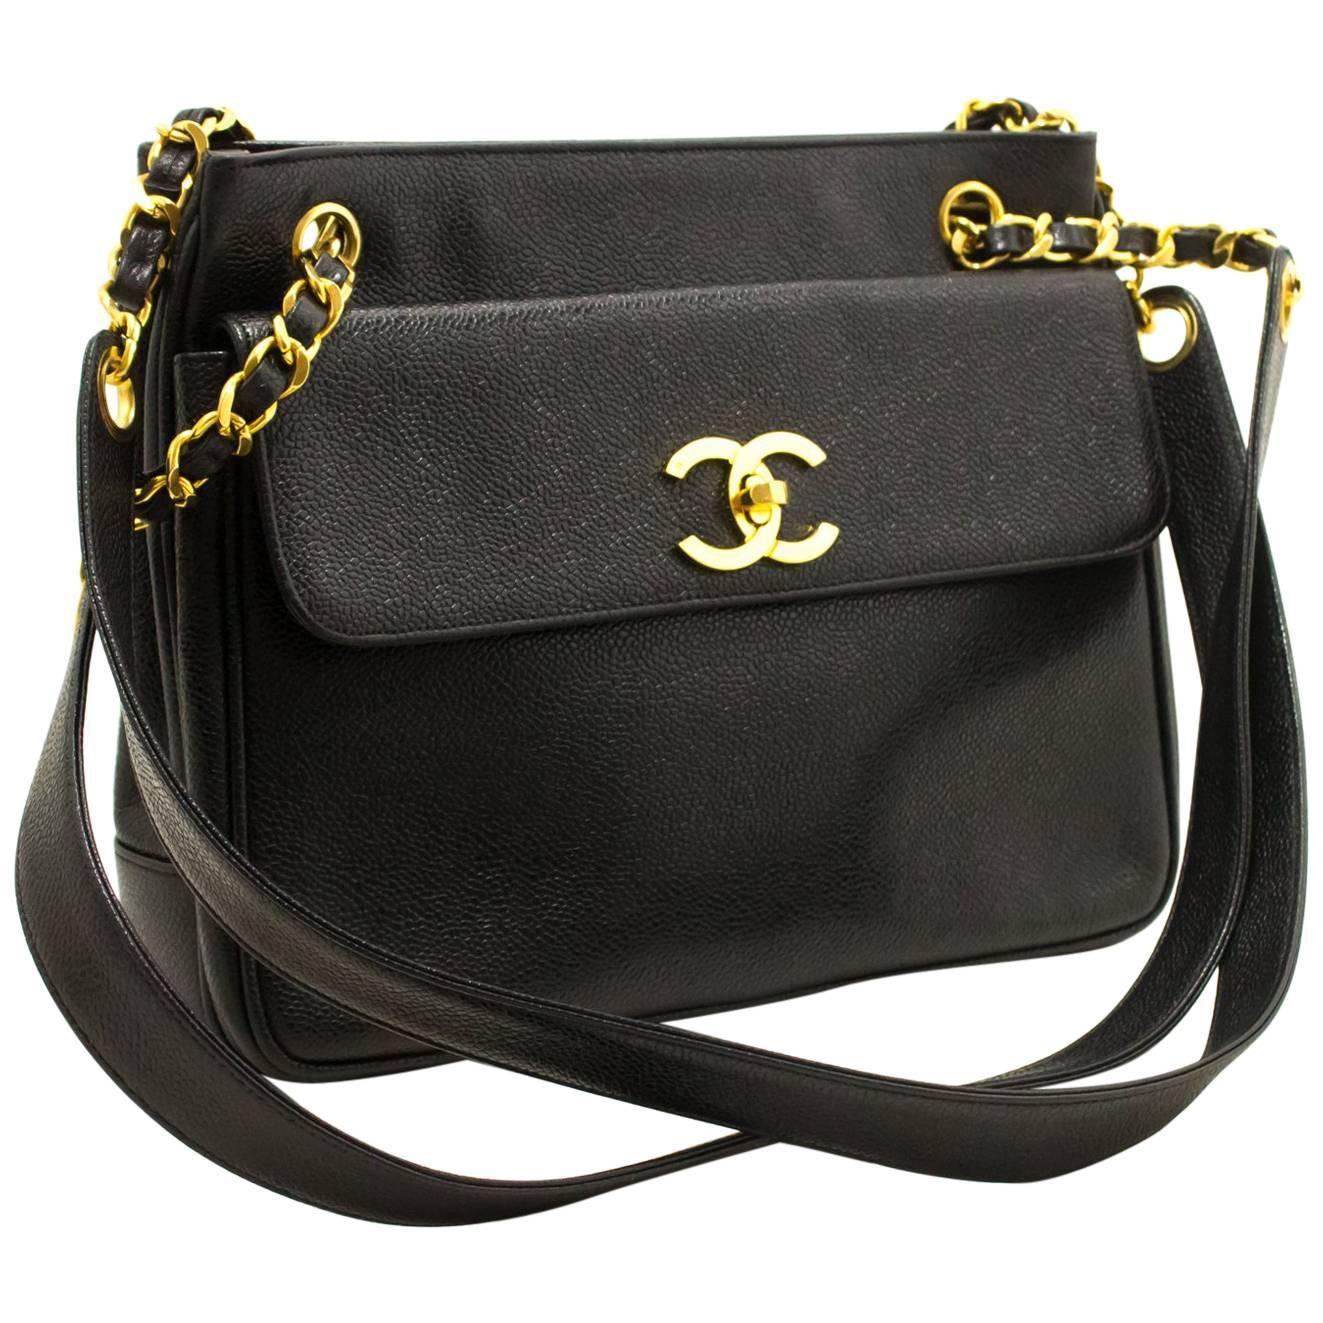 CHANEL Caviar Chain Shoulder Bag Black Leather Gold Hw CC Pocket